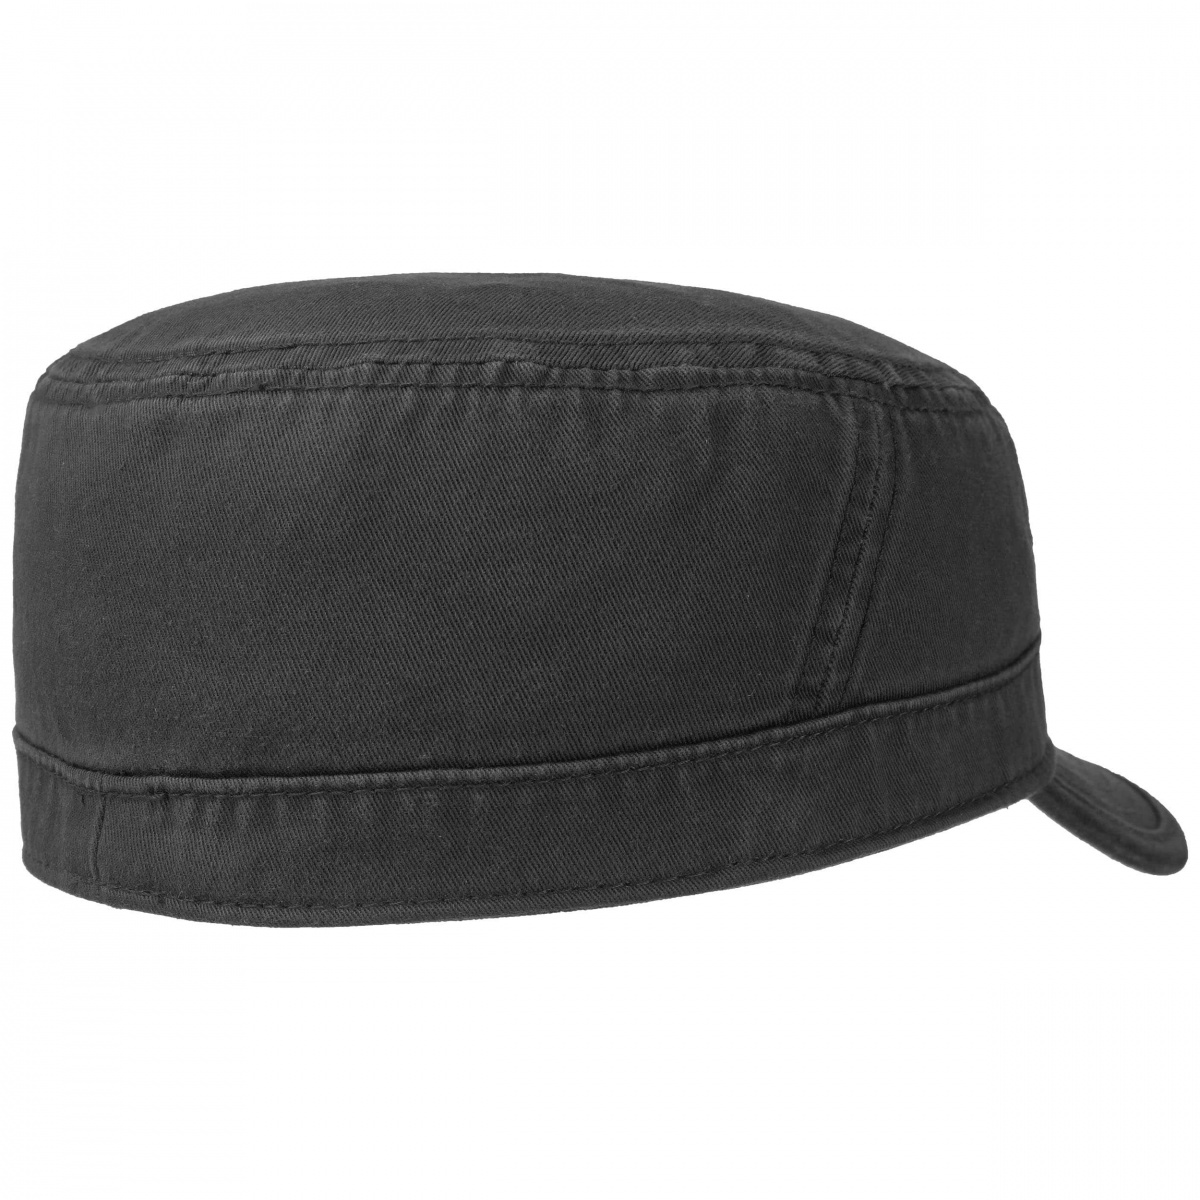 Casquette cubaine noir femme bonnet gavroche chapeau taille 54